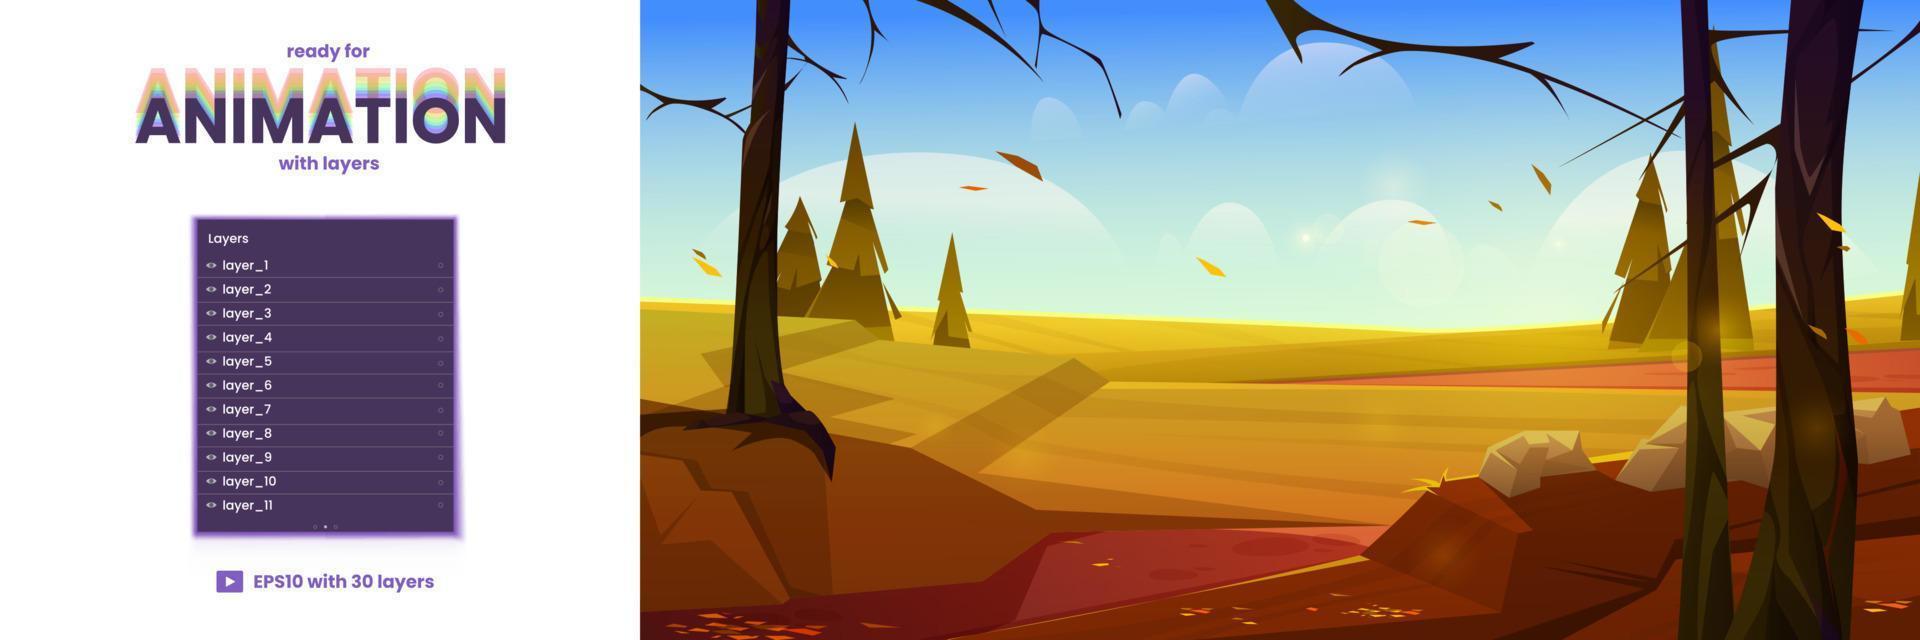 dibujos animados otoño naturaleza paisaje animación capas vector